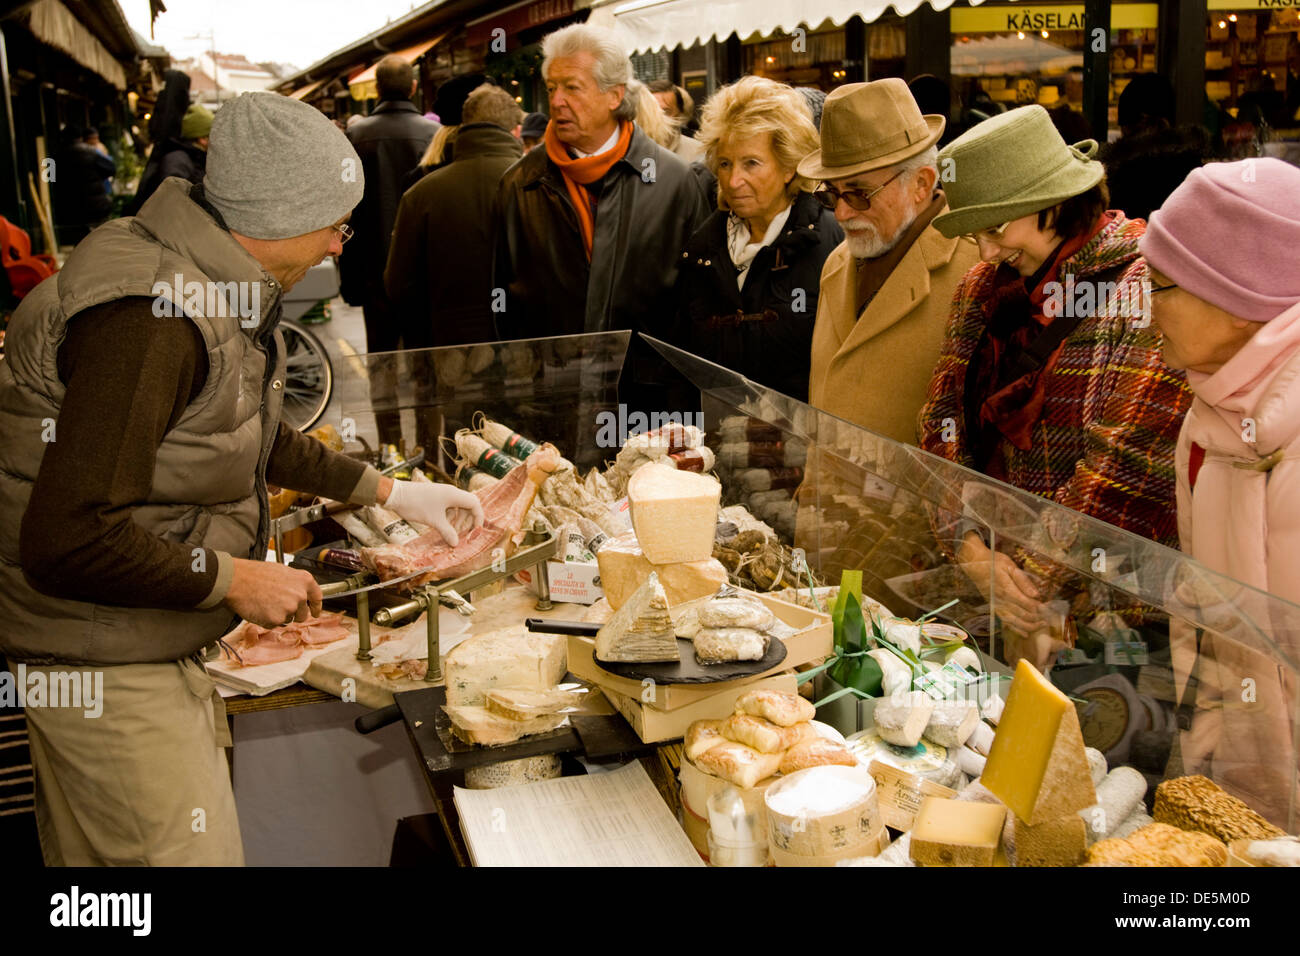 Österreich, Wien 6, Naschmarkt, Pöhl am Naschmarkt bietet eine riesige Auswahl an Käse aus vielen Ländern. Stock Photo